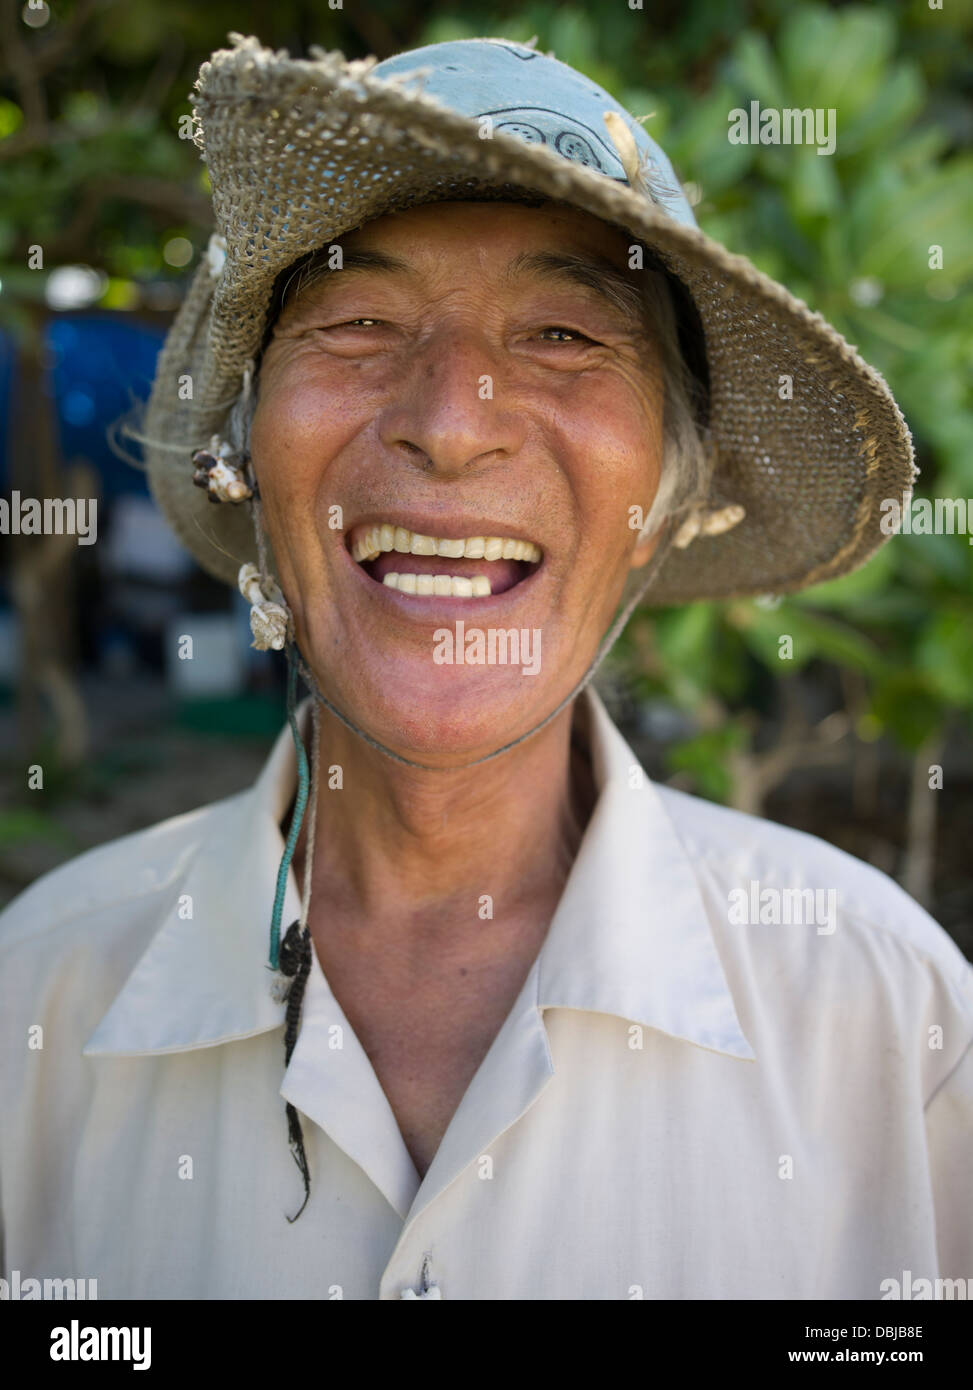 Okinawa Mann am Yoshino Strand - Insel Miyako, Okinawa, Japan. Okinawan Menschen haben eines der längsten Lebenserwartung Stockfoto